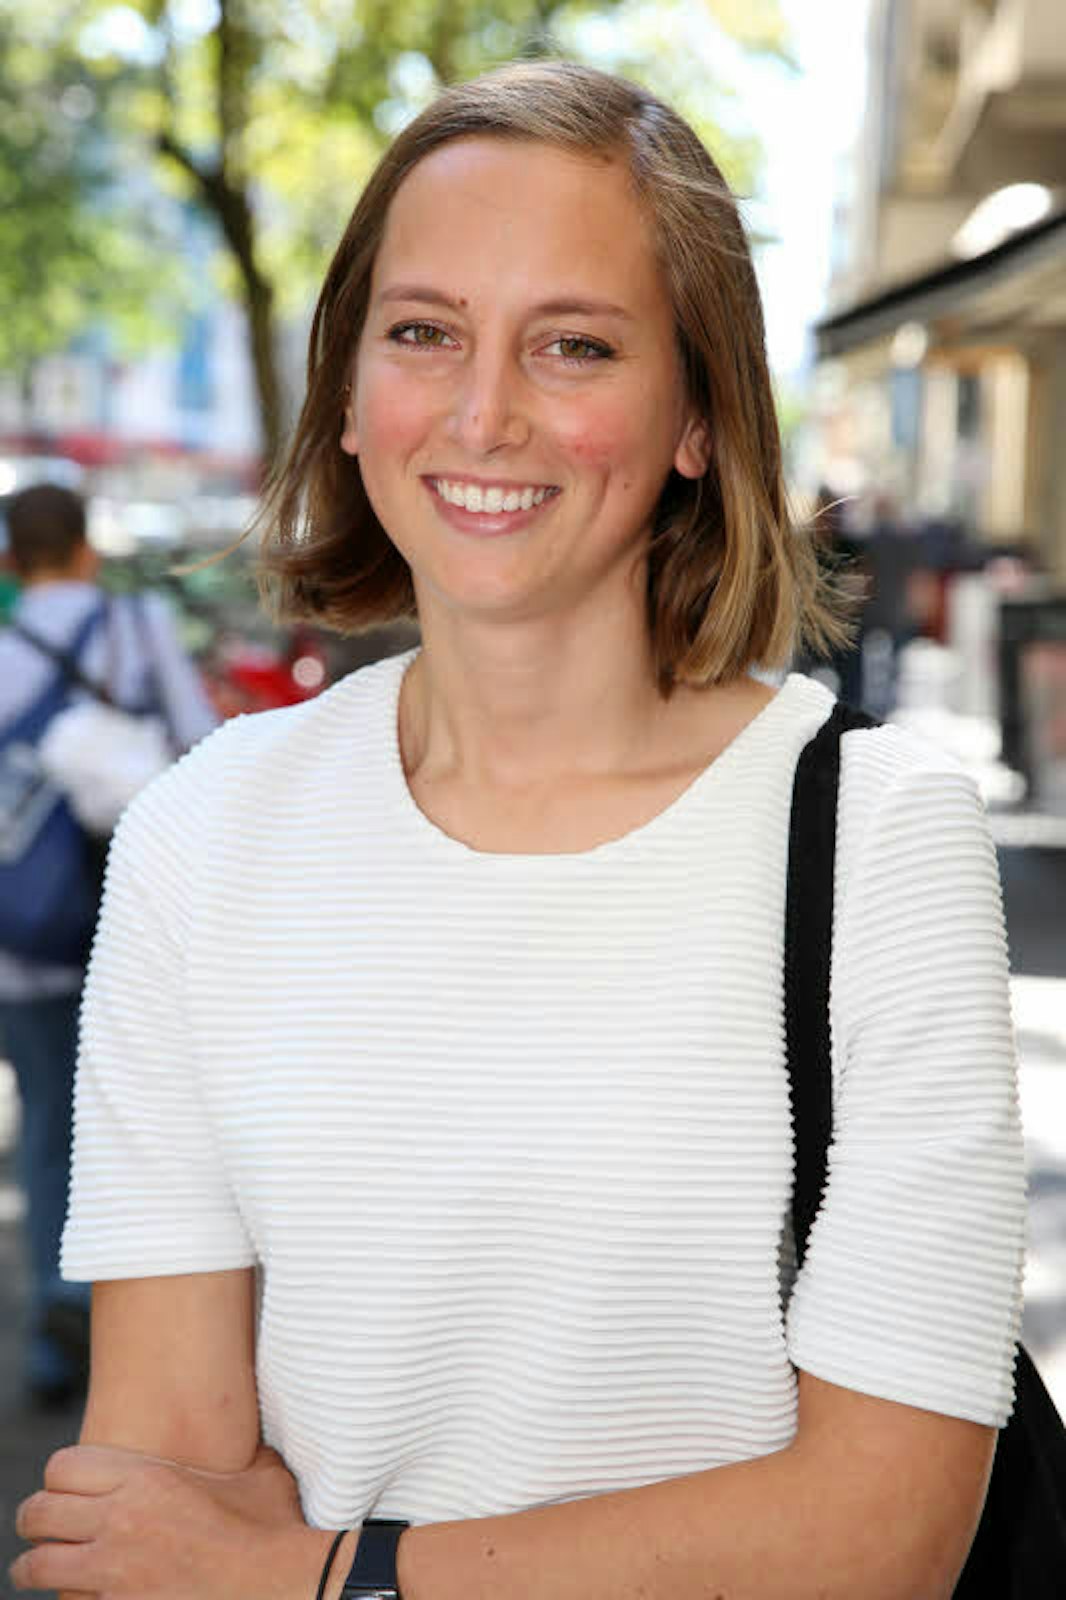 Johanna Stapf, 26